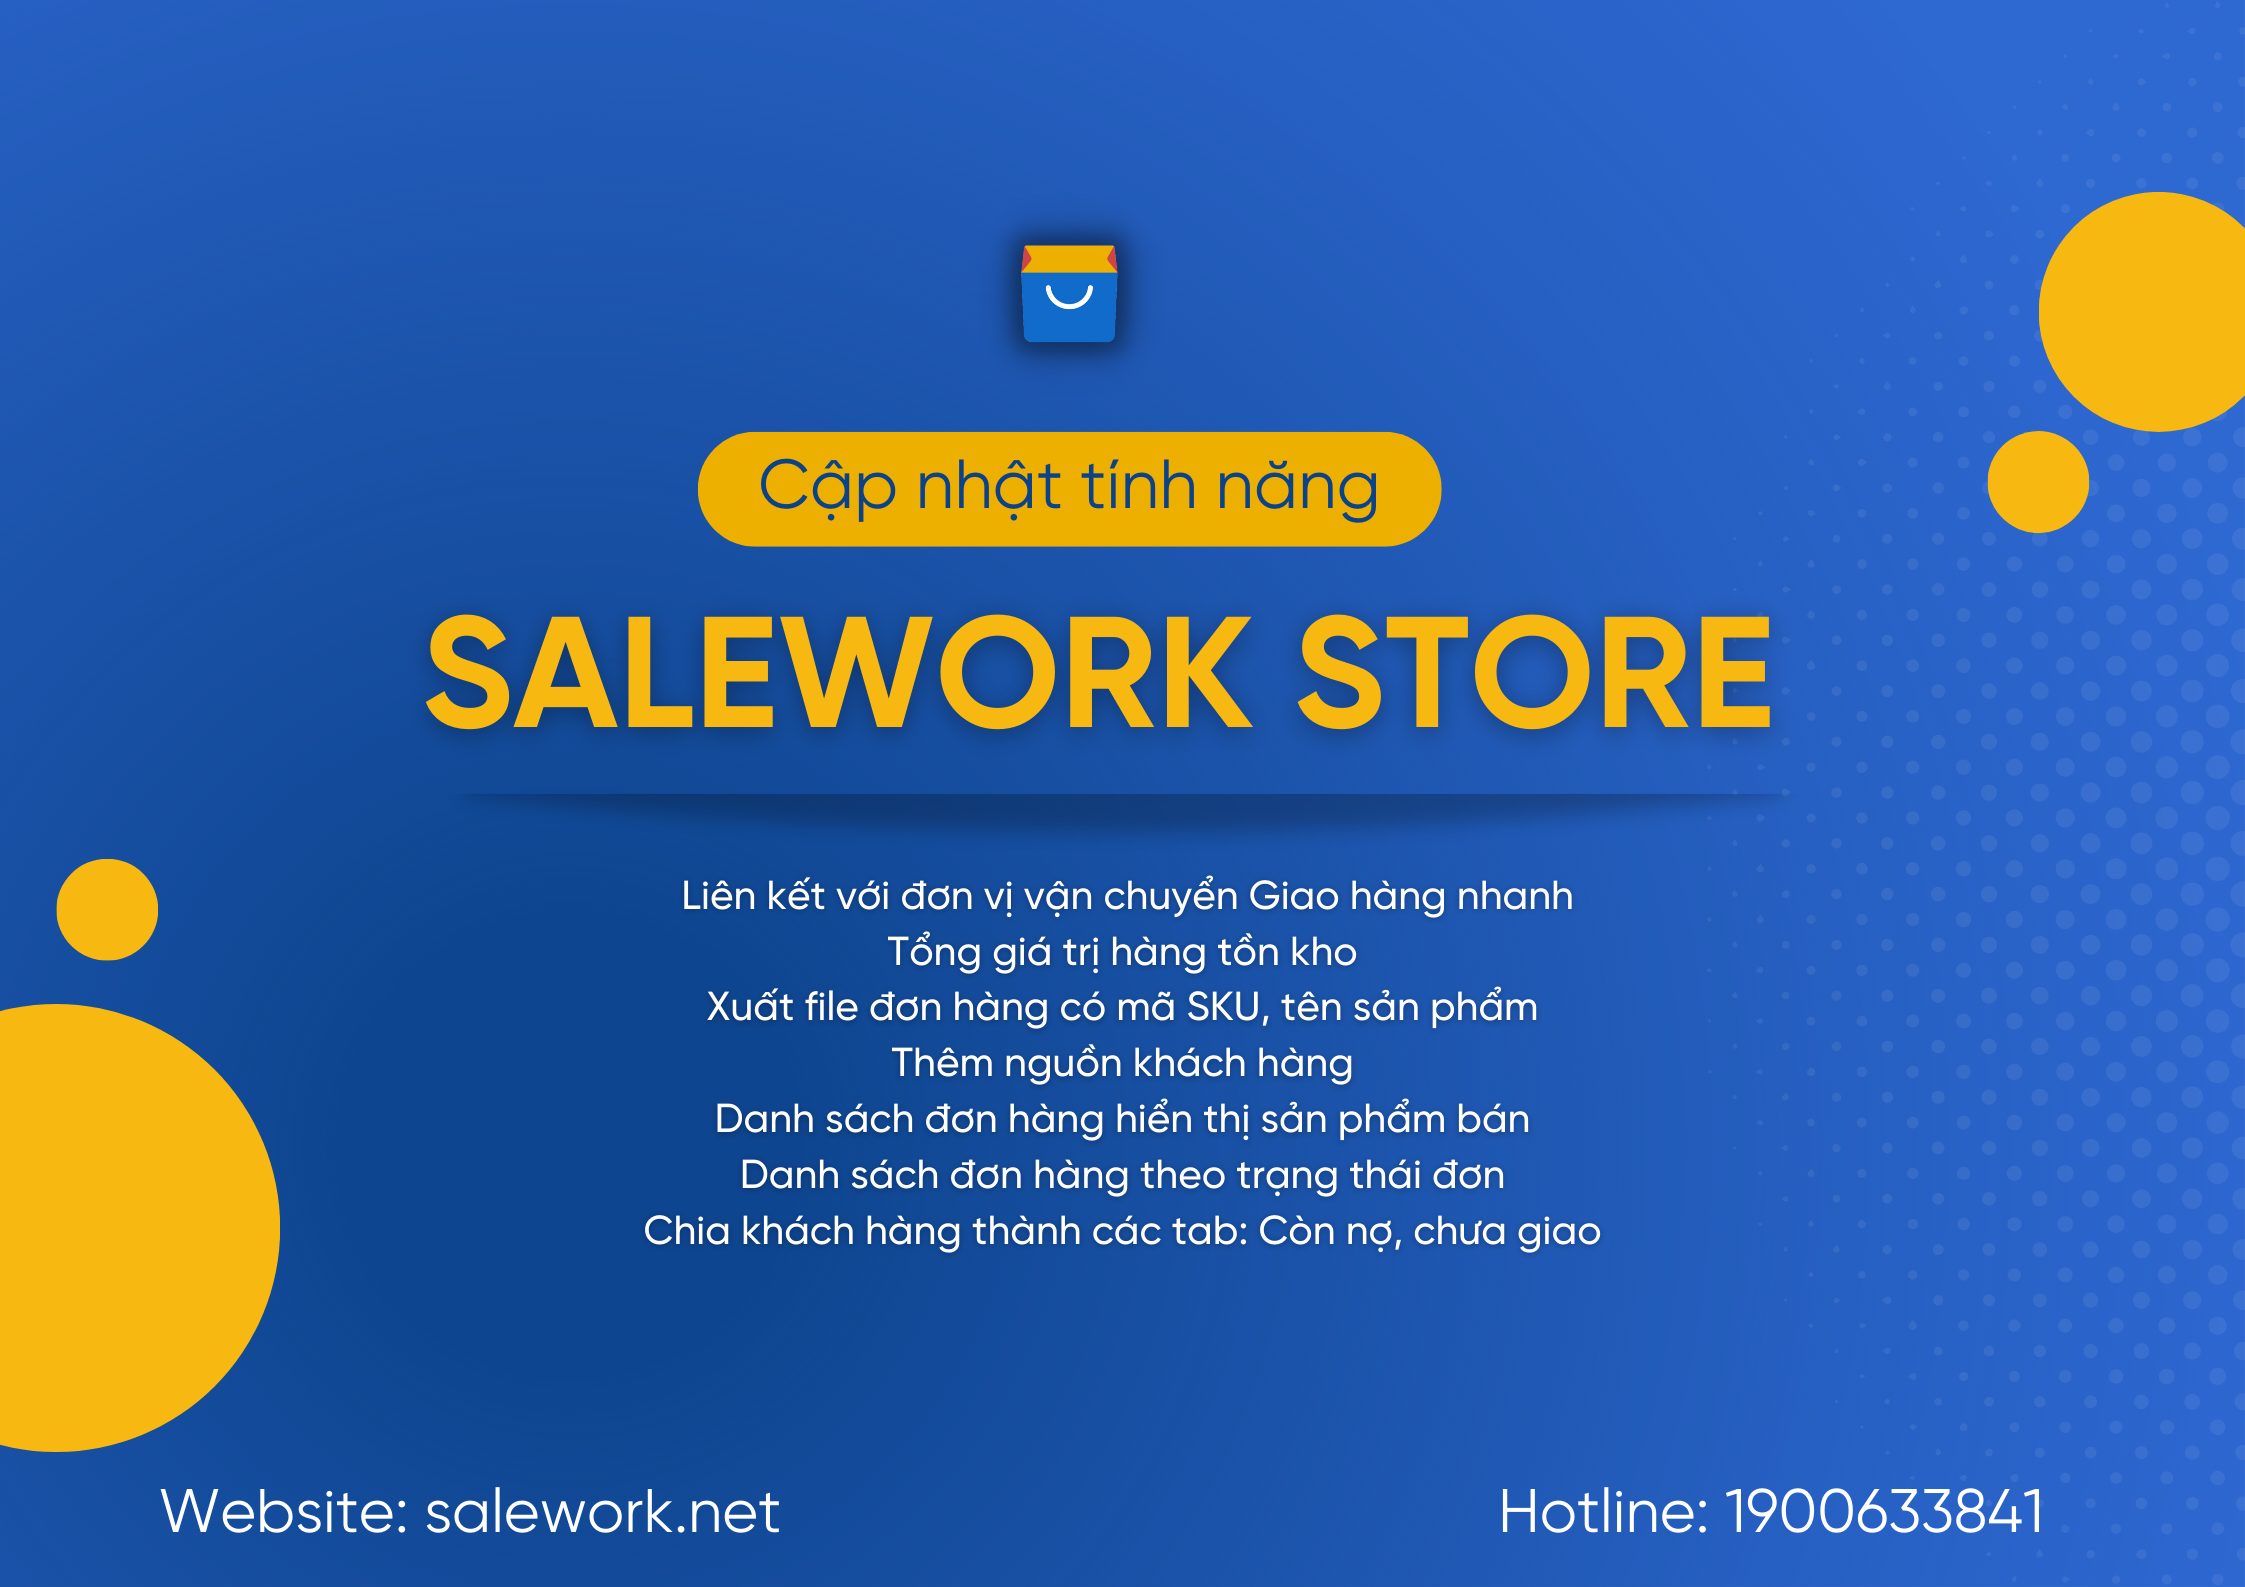 [ Thông báo] Salework Store cập nhật phần mềm - 17